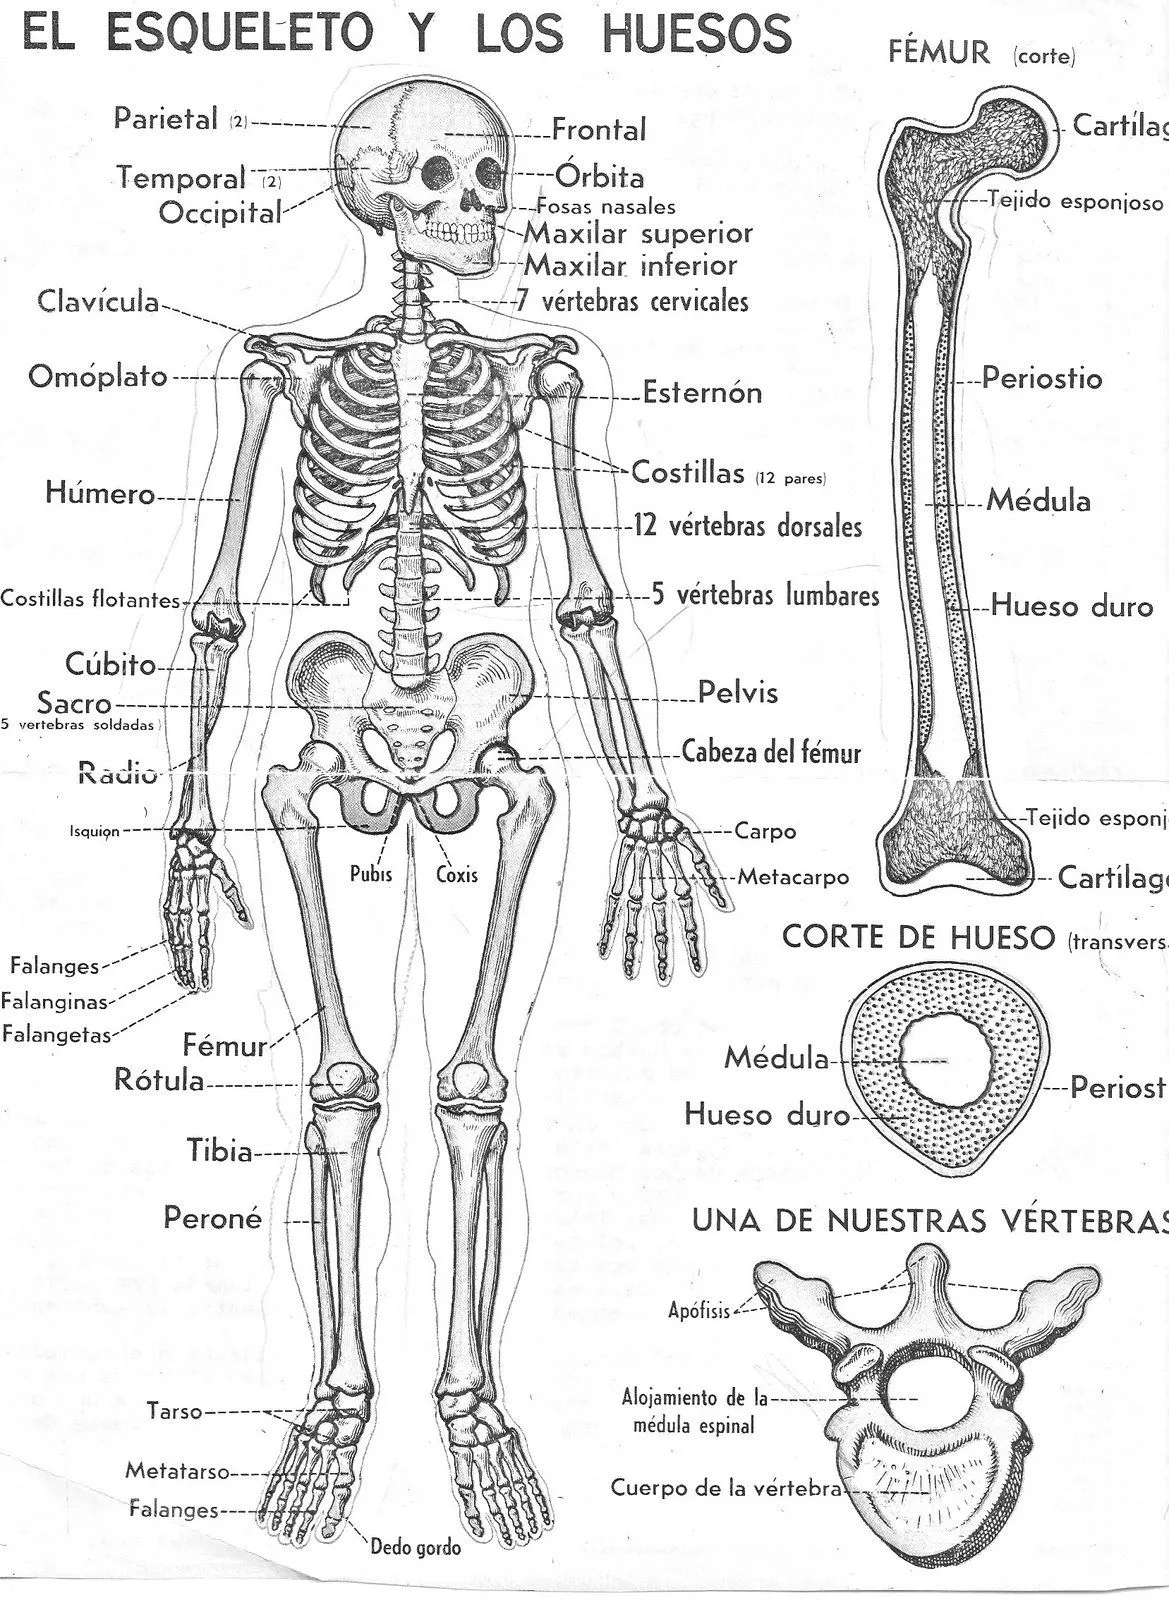 Curiosidades sobre el esqueleto y los dientes.